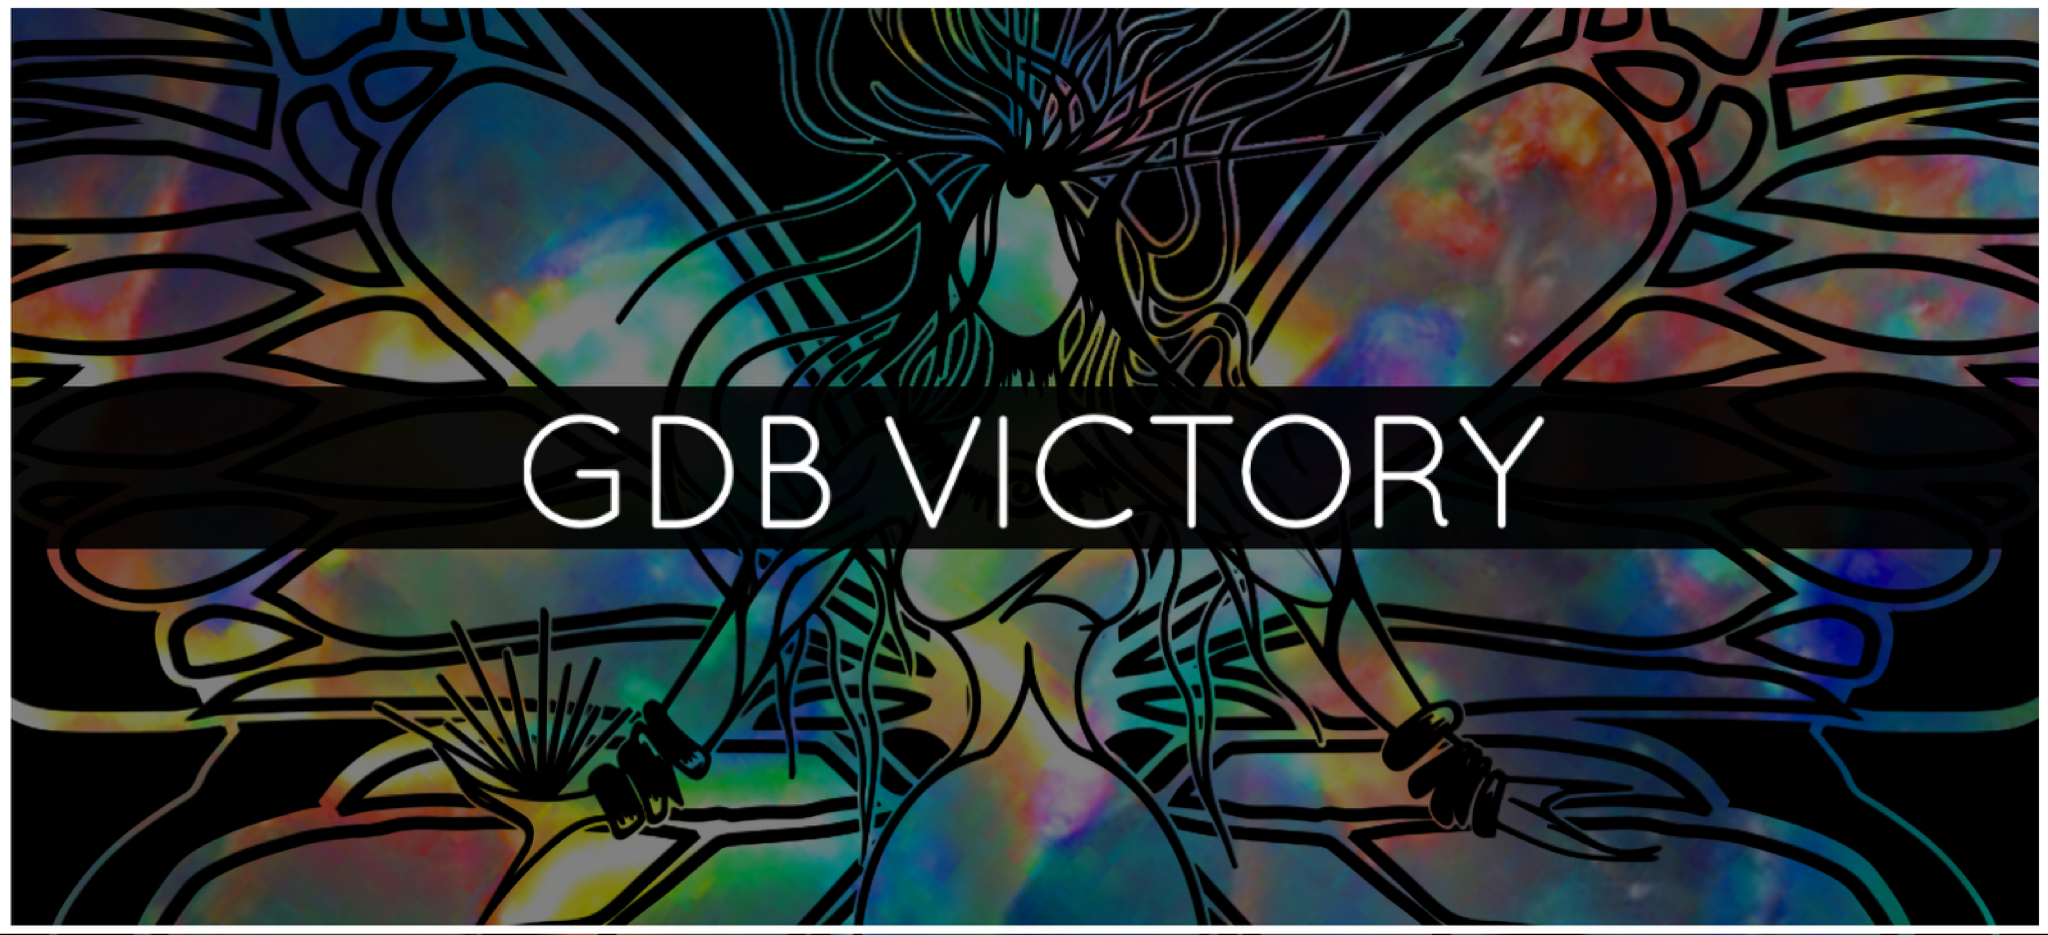 GDB VICTORY TALISMAN™